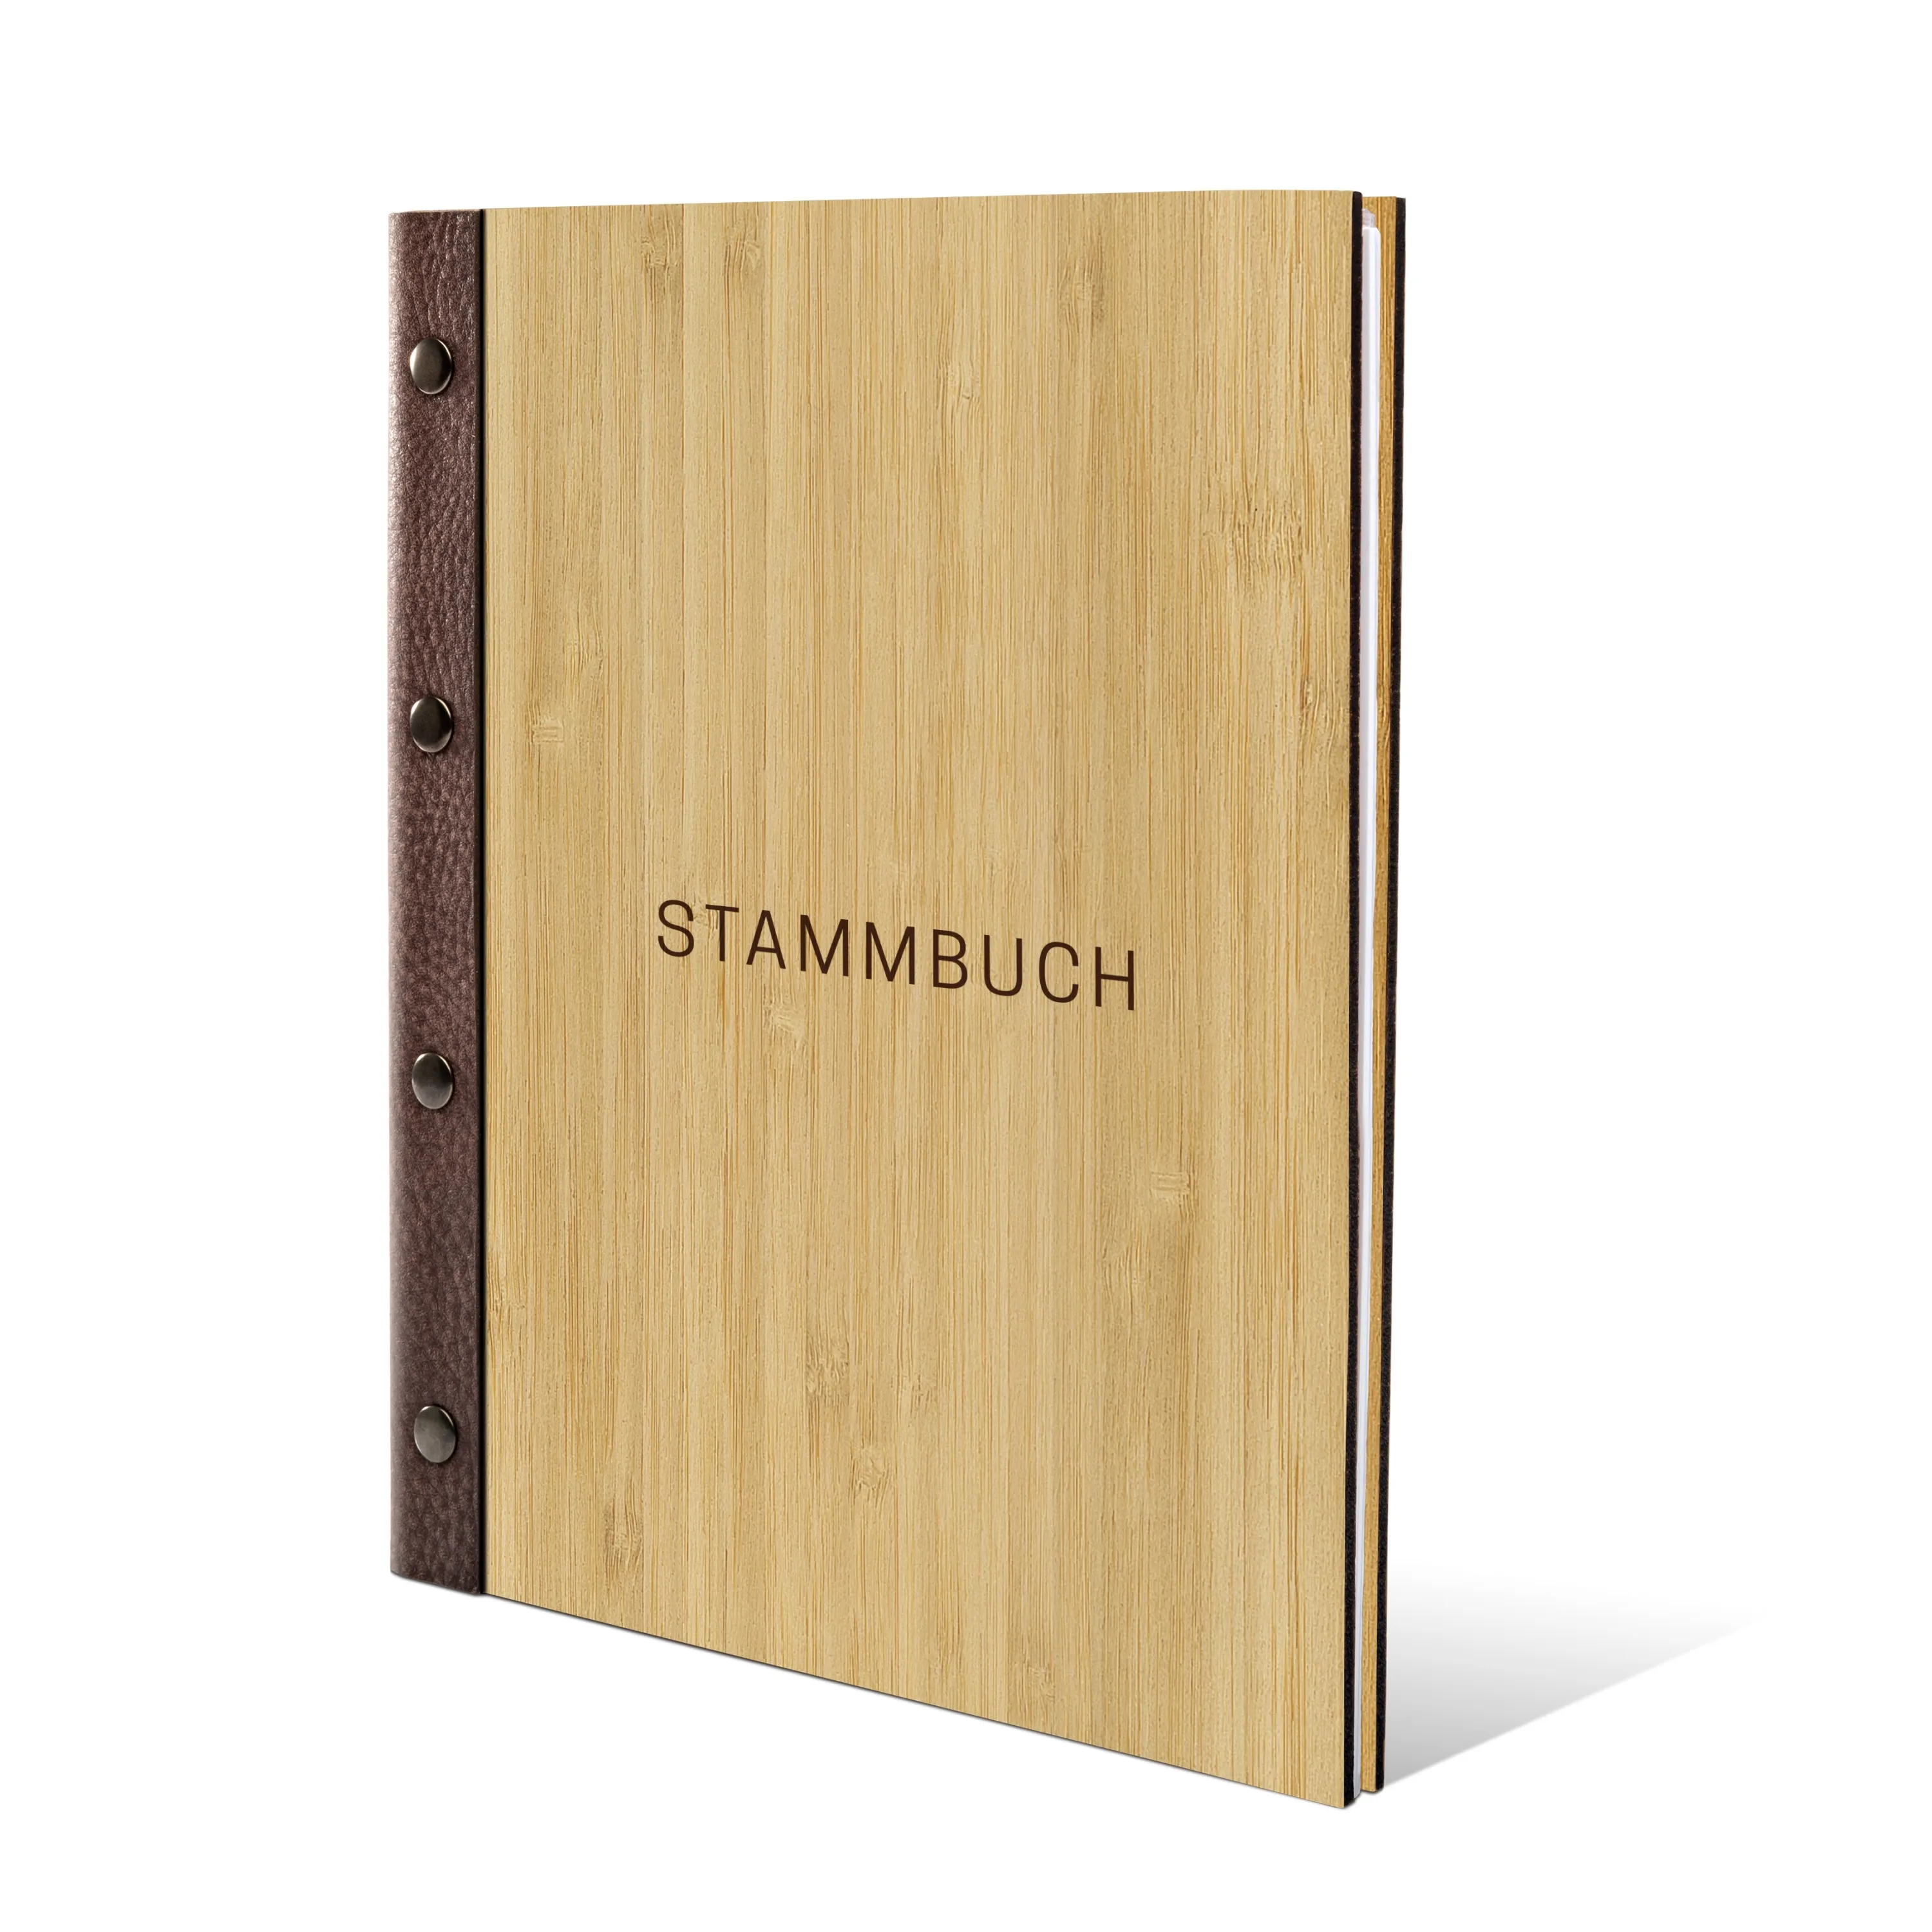 Stammbuch Bambus Stammbuchformat - Schlicht